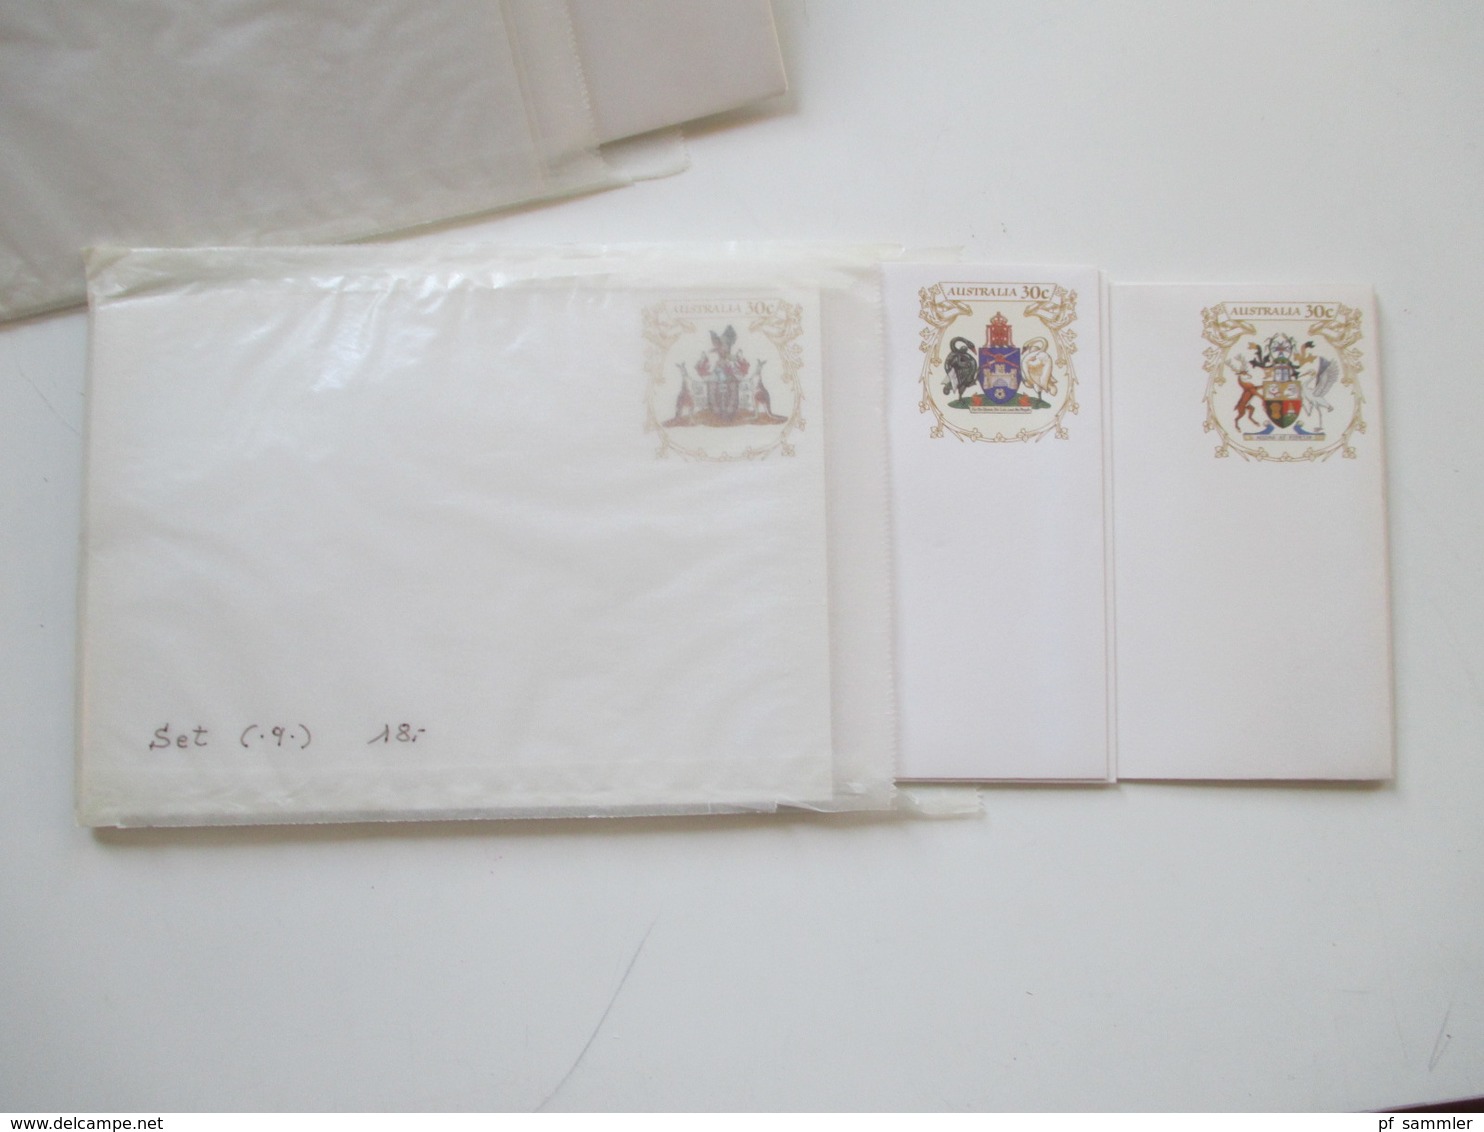 Australien Ganzsachen / Pre stamped envelope / Stationaries ca. 250 stk. Ganze Serien / Motive usw. Ungebraucht / Luxus!